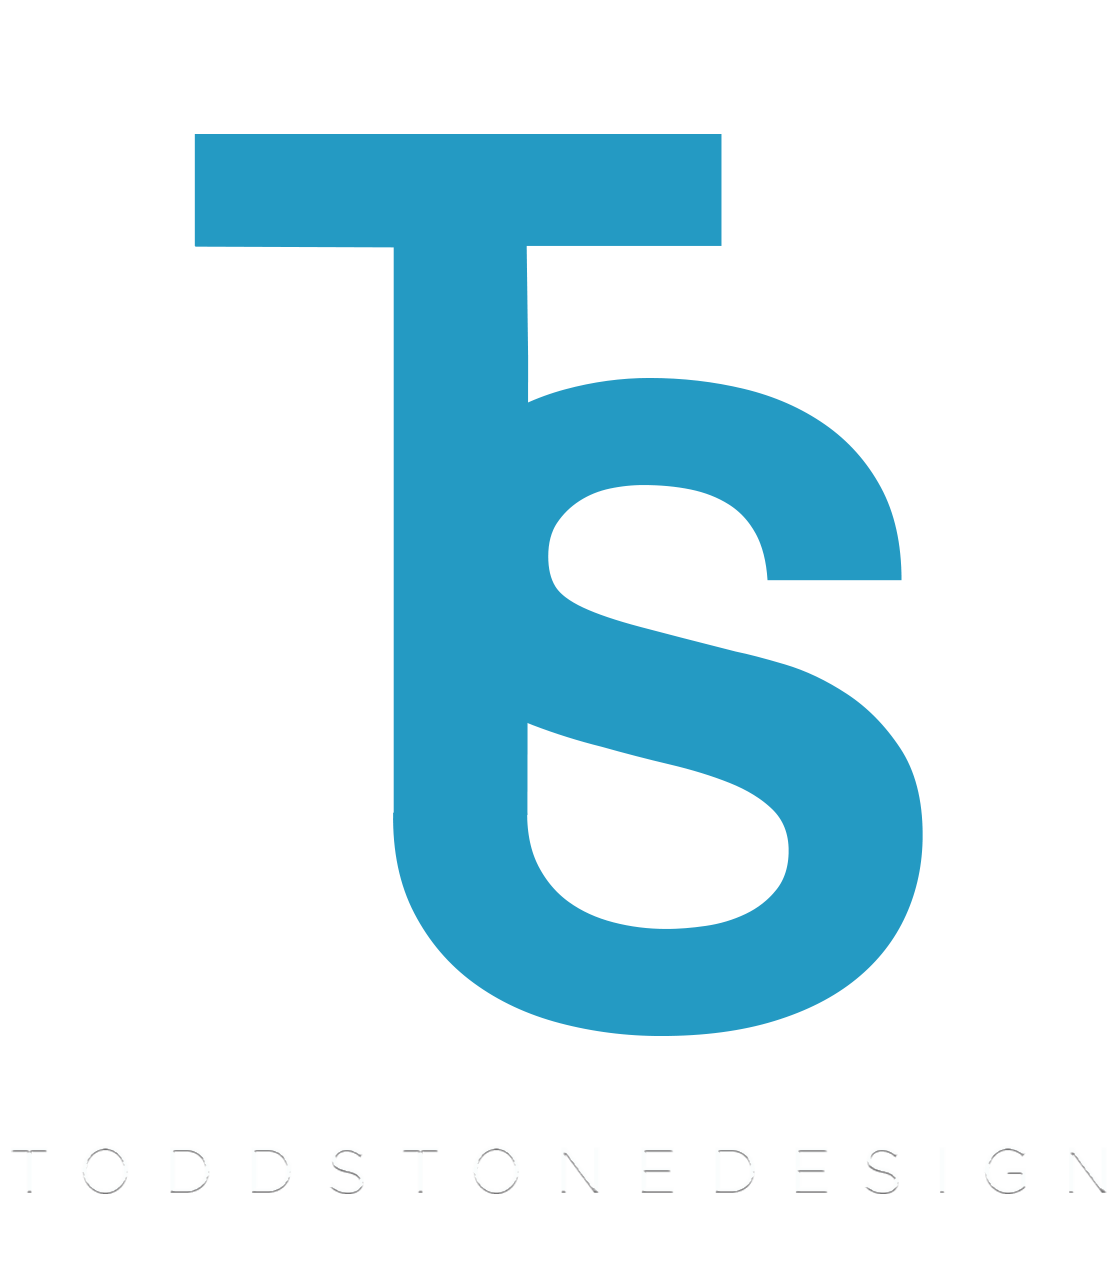 Todd Stone Design